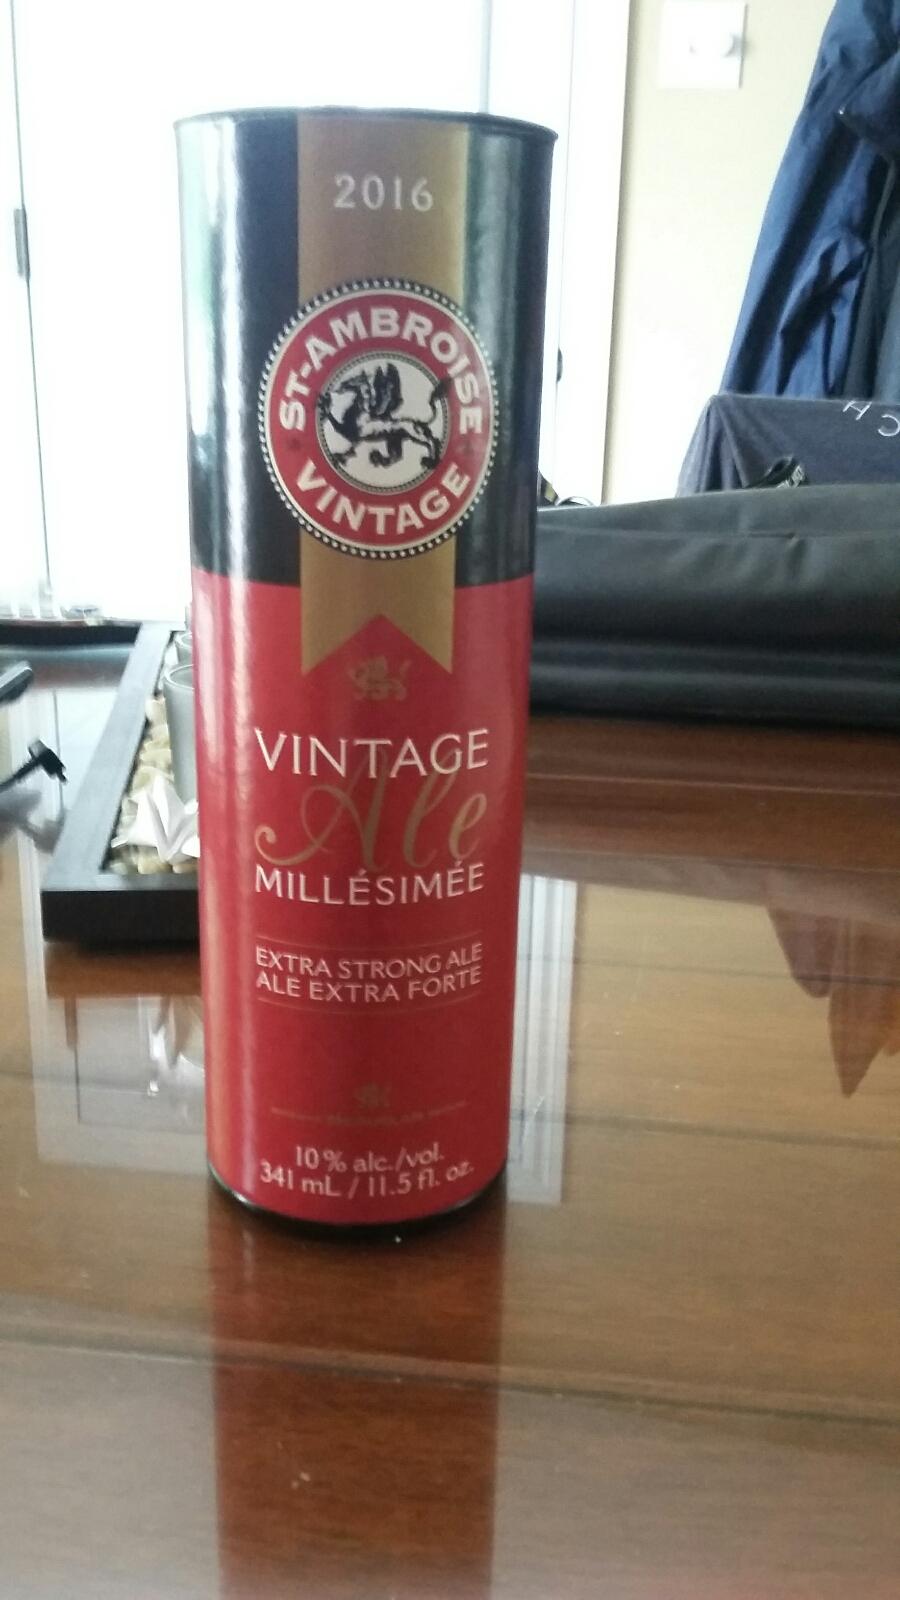 St-Ambroise Vintage Ale Millésimée